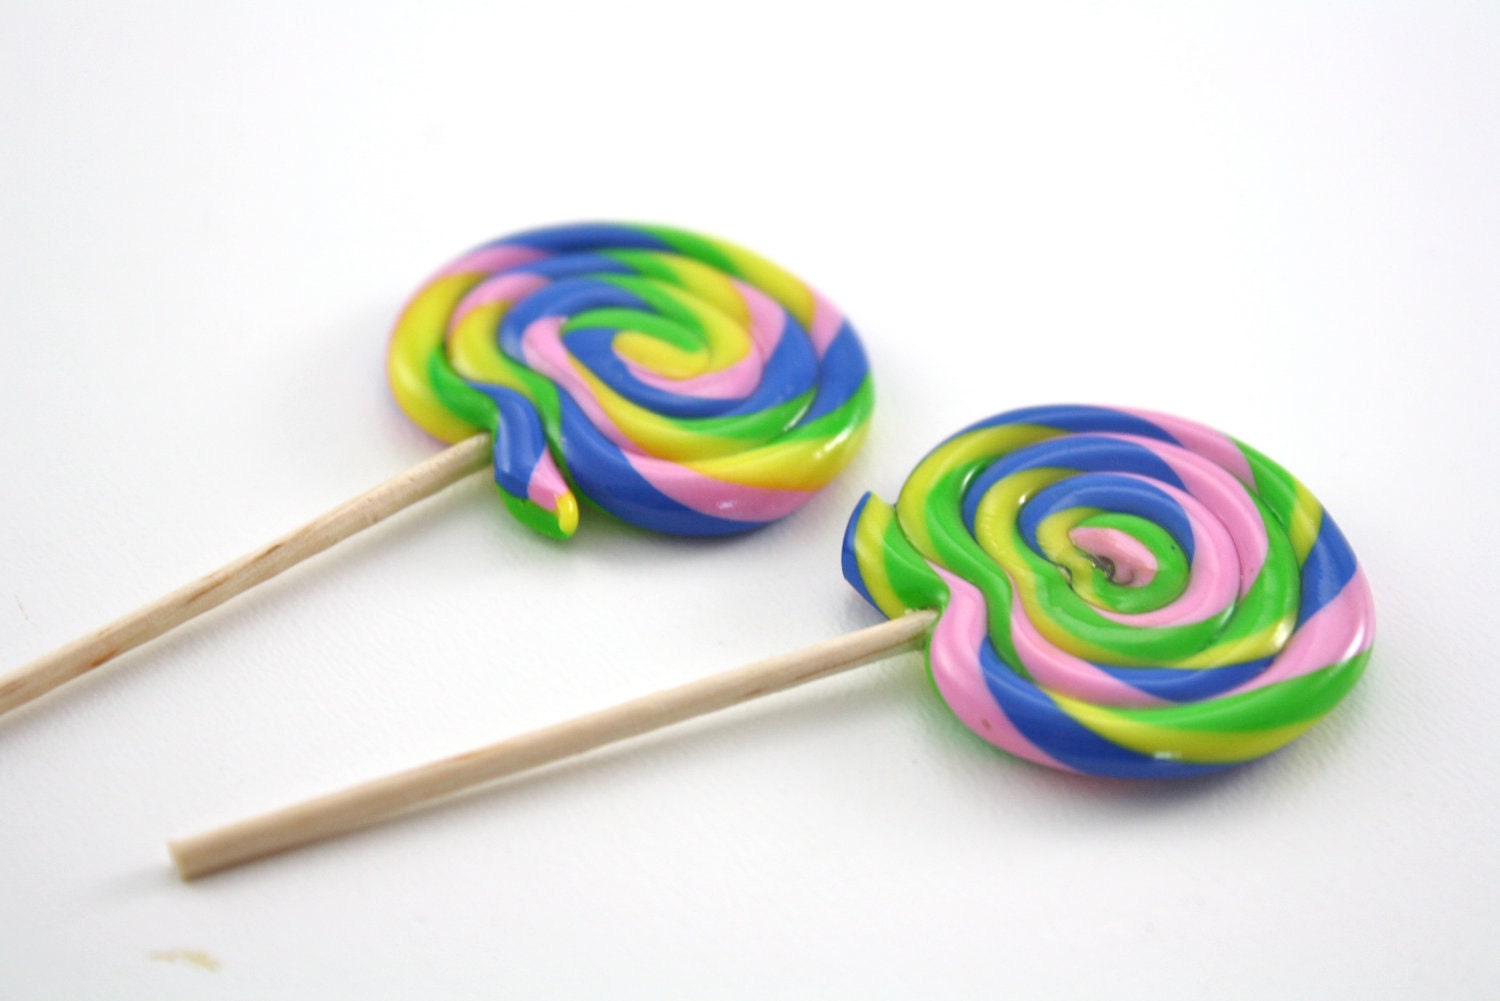 large tall swirl lollipops